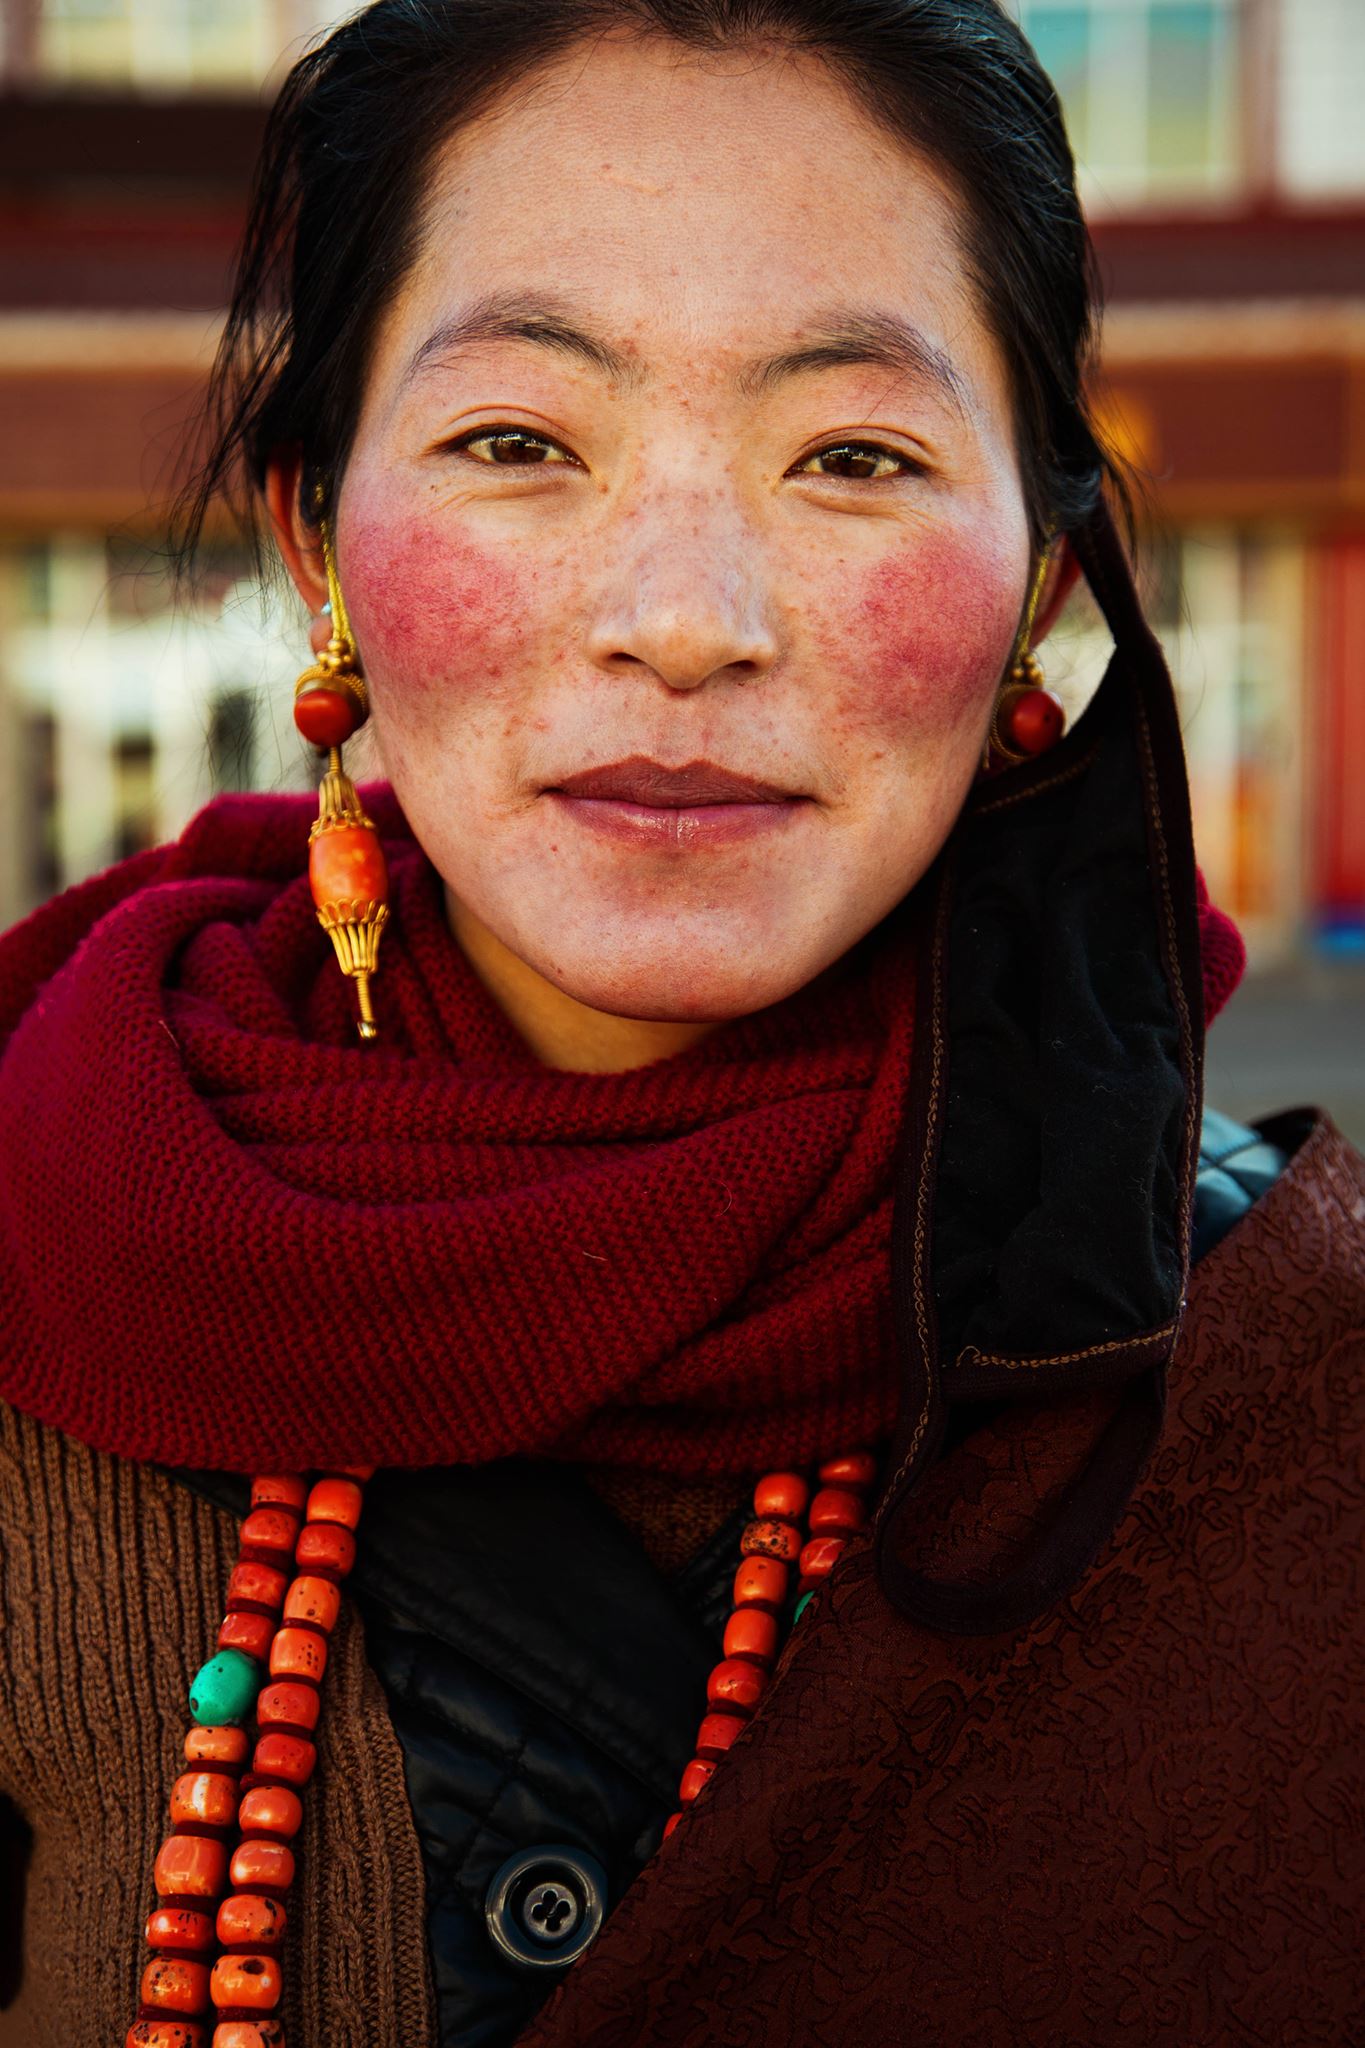 Самые красивые нации женщины. Михаэла норок атлас красоты. Михаэла норок атлас красоты Непал. Атлас красоты Микаэла норок Филиппины. Фотограф Михаэла норок атлас красоты.